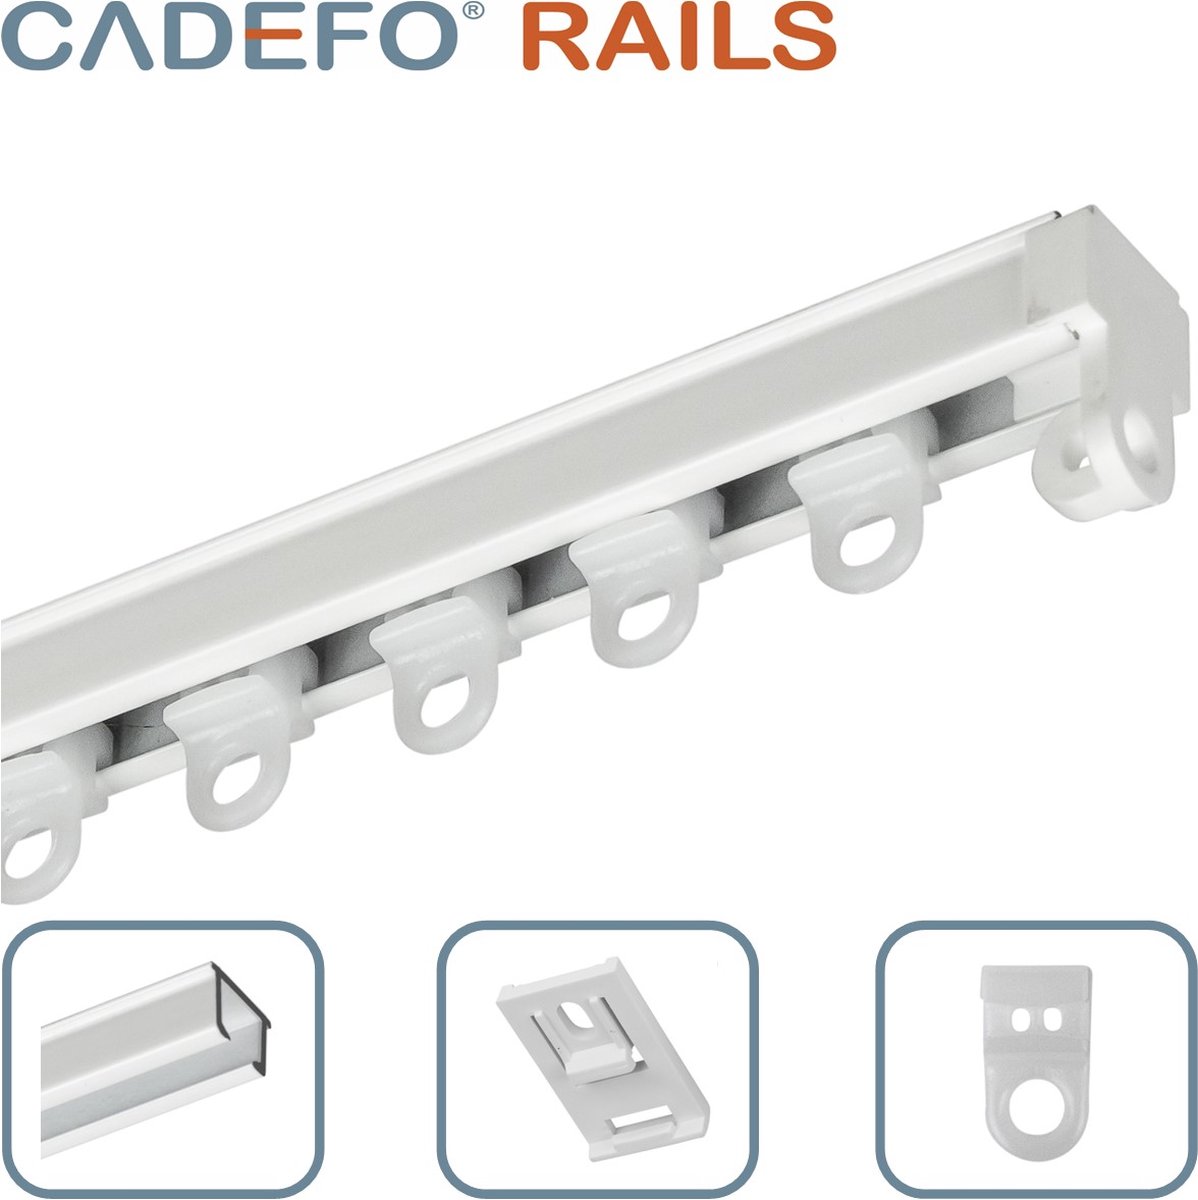 CADEFO RAILS (201 - 250 cm) Gordijnrails - Compleet op maat! - UIT 1 STUK - Leverbaar tot 6 meter - Plafondbevestiging - Lengte 205 cm